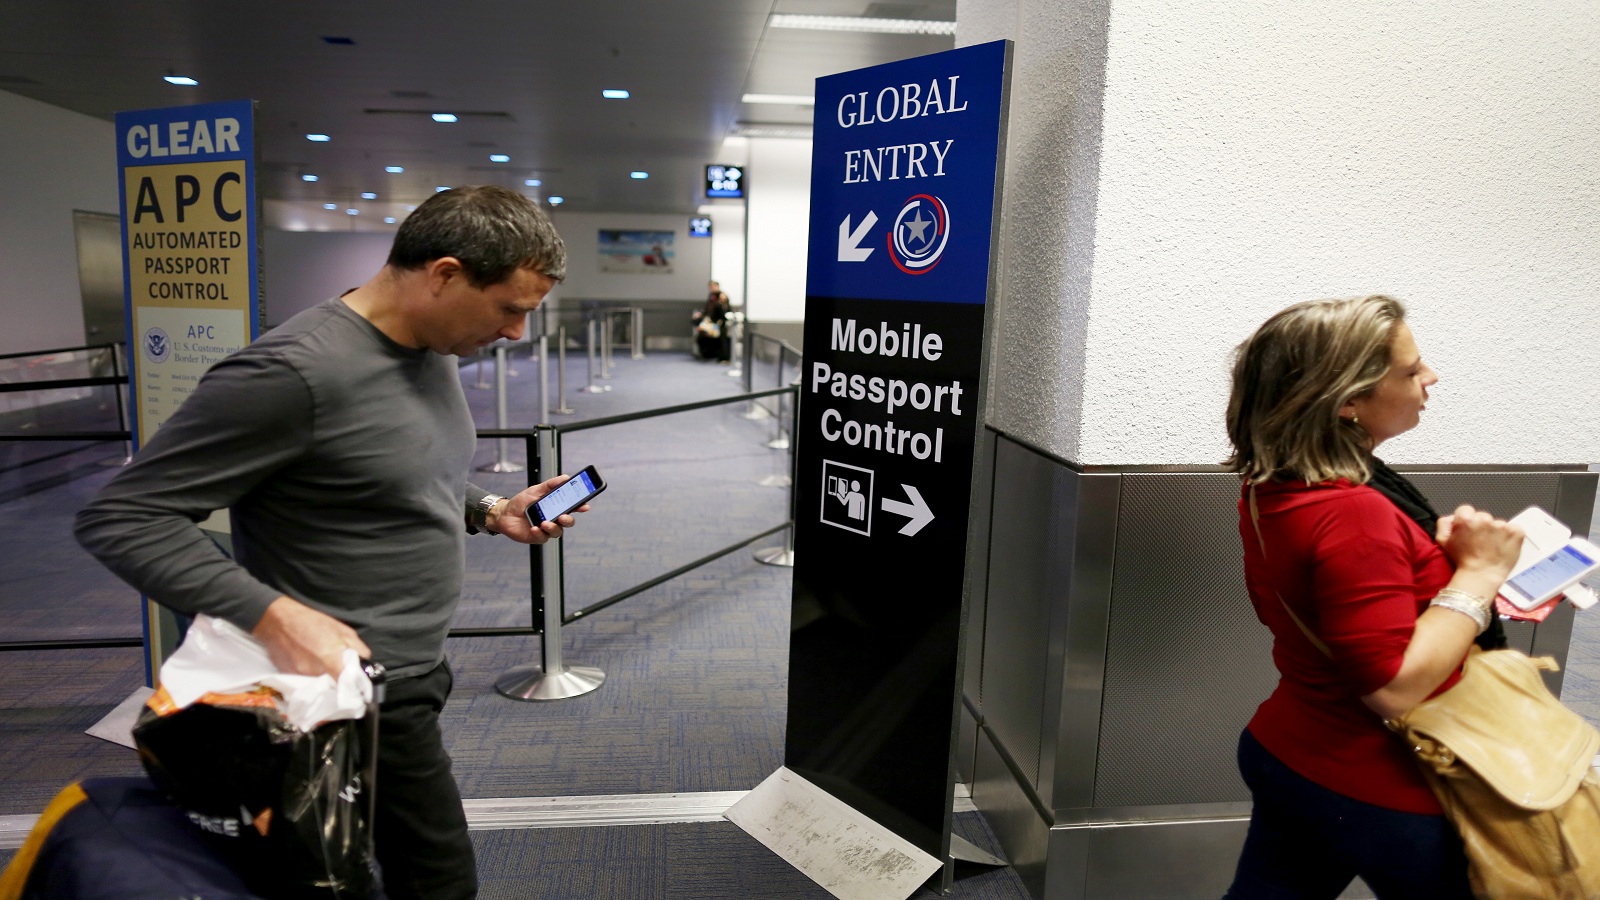 أميركا تطلب من المسافرين الأجانب حساباتهم الإجتماعية